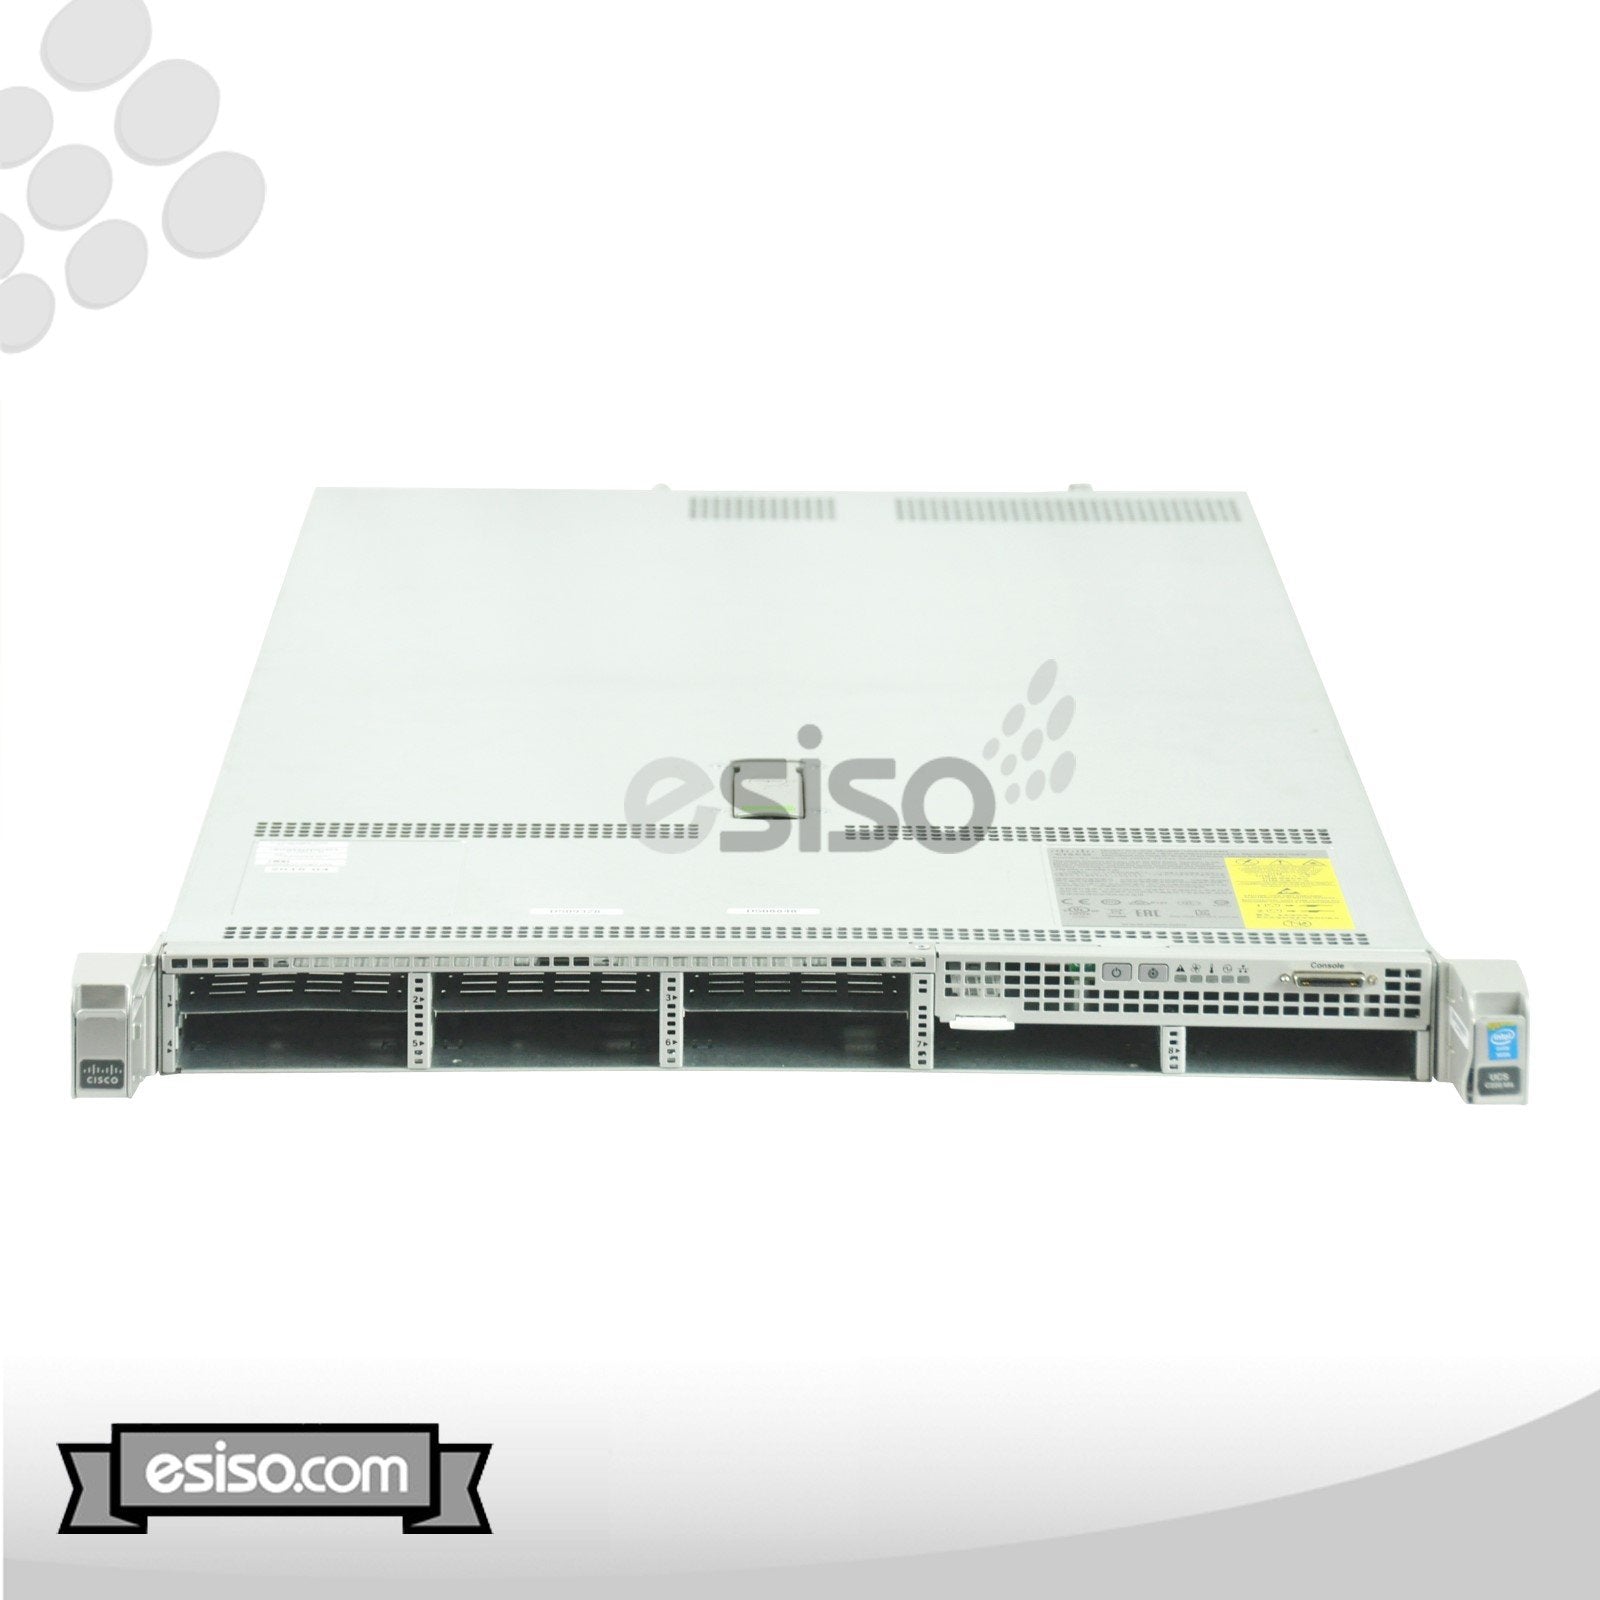 CISCO UCS C220 M4 8SFF 2x 10 CORE E5-2660V3 2.6GHz 256GB RAM 3x 300GB